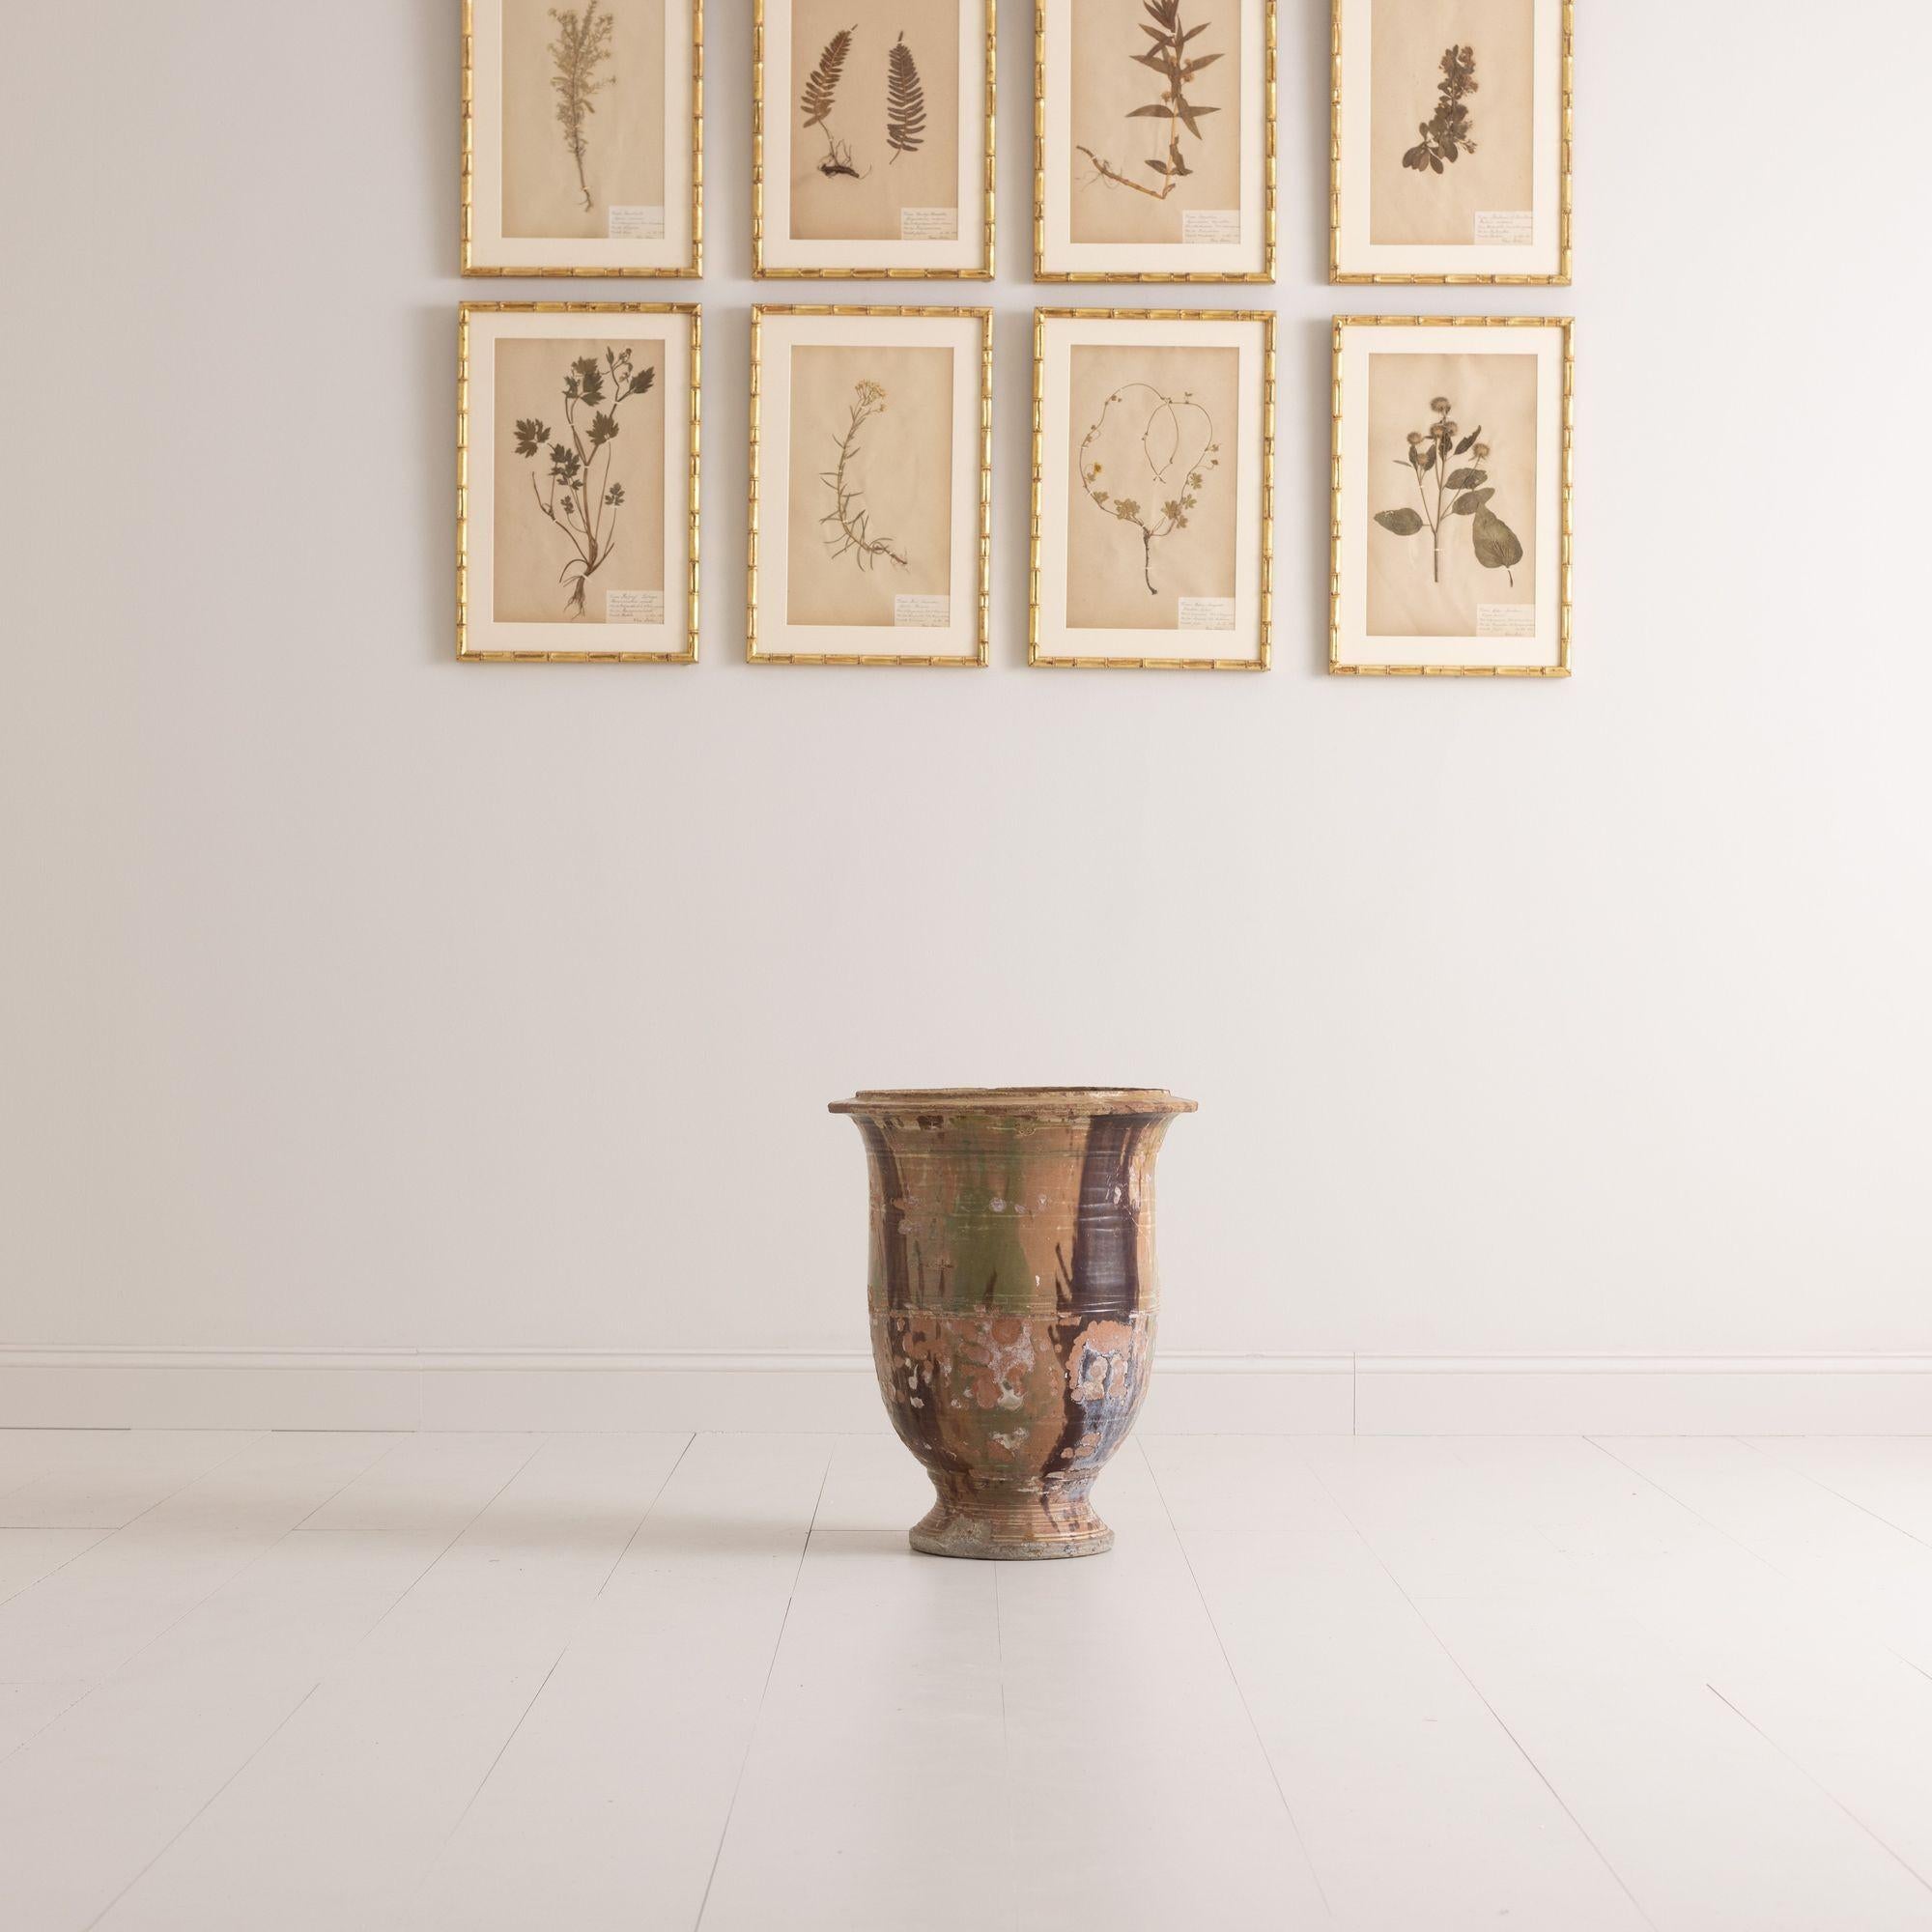 Eine französische Jardiniere von Anduze, signiert von Boisset Rodier, dem ursprünglichen Hersteller der Vasen von Anduze.  Dieses Stück hat eine schöne abgenutzte Glasur aus Braun, Grün und Ocker mit dekorativen eingeschnittenen Ringen. Der Topf